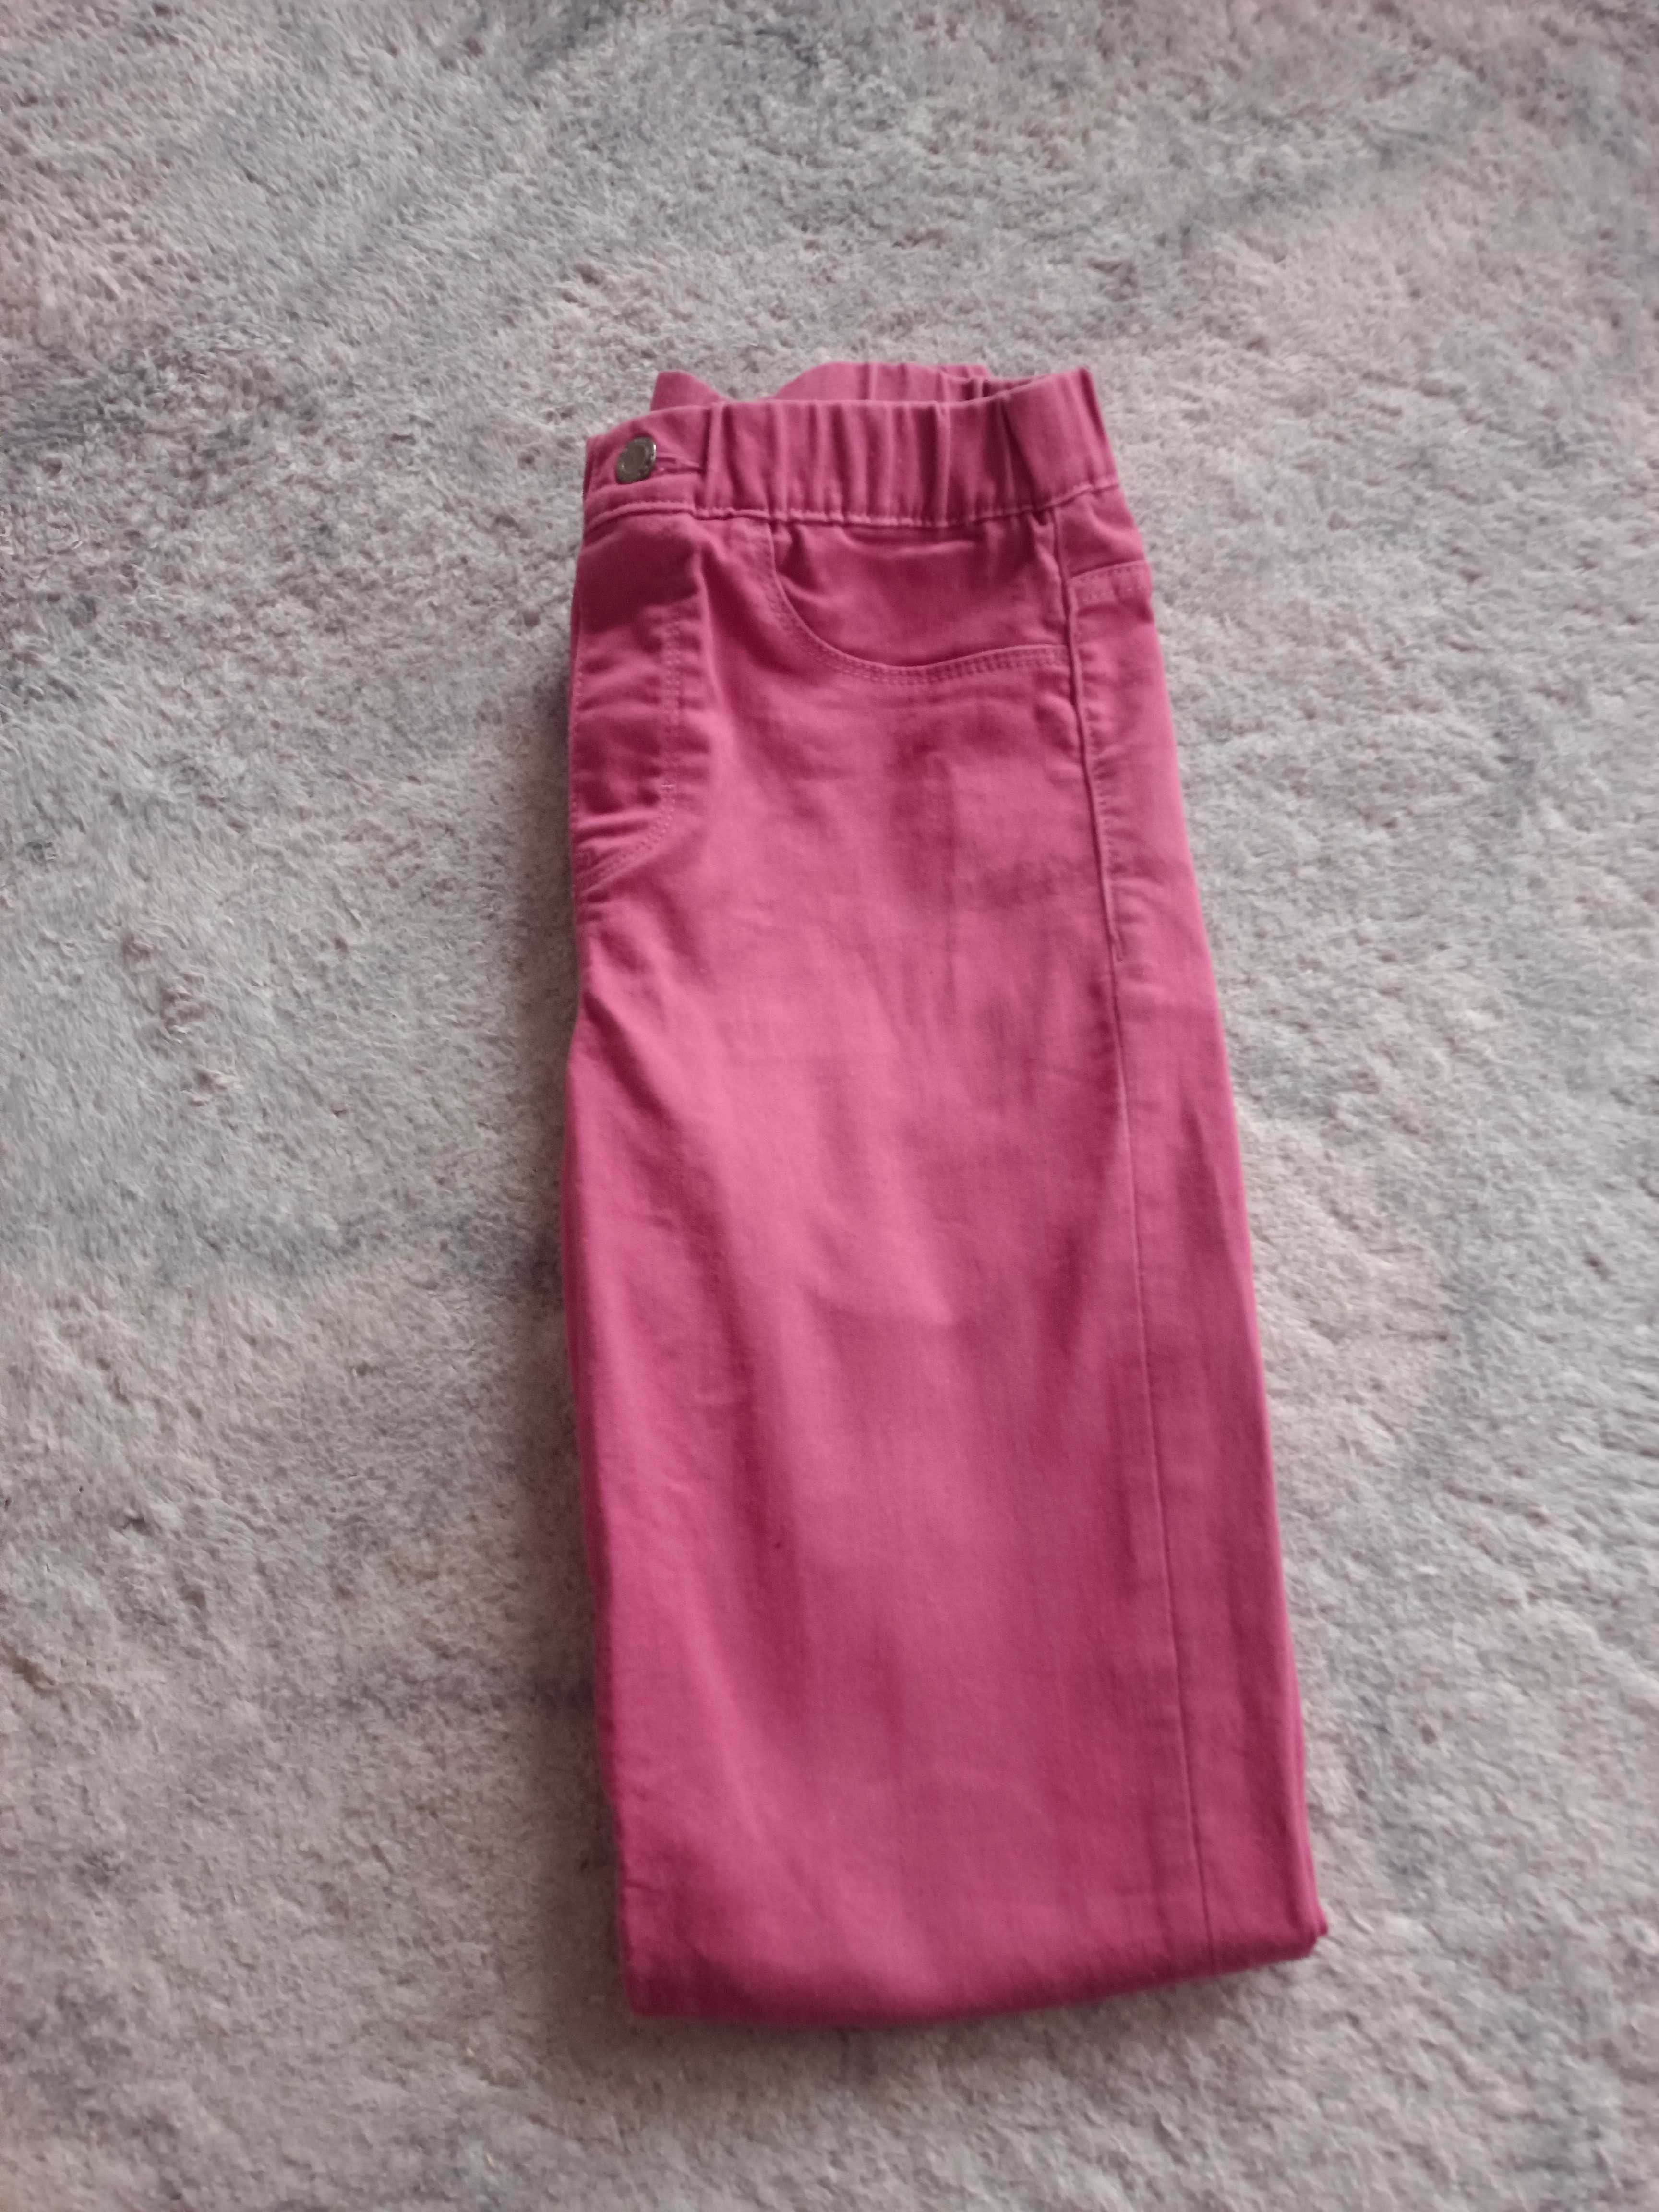 Jegginsy róż/fiolet Esmara 34,xs miękki jeans, dopasowują się do figur